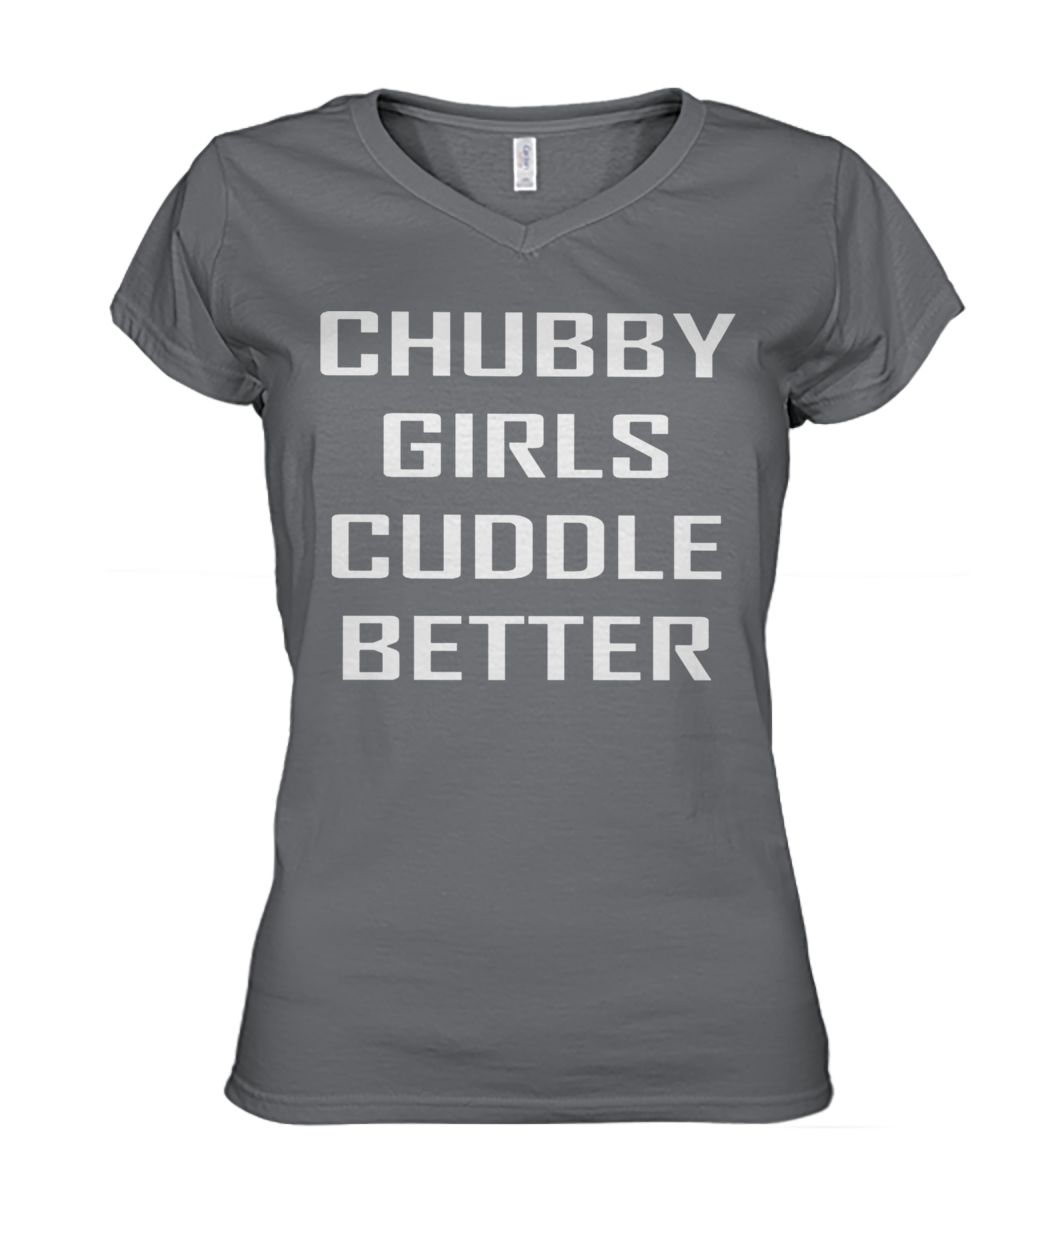 Chubby girls cuddle better women's v-neck